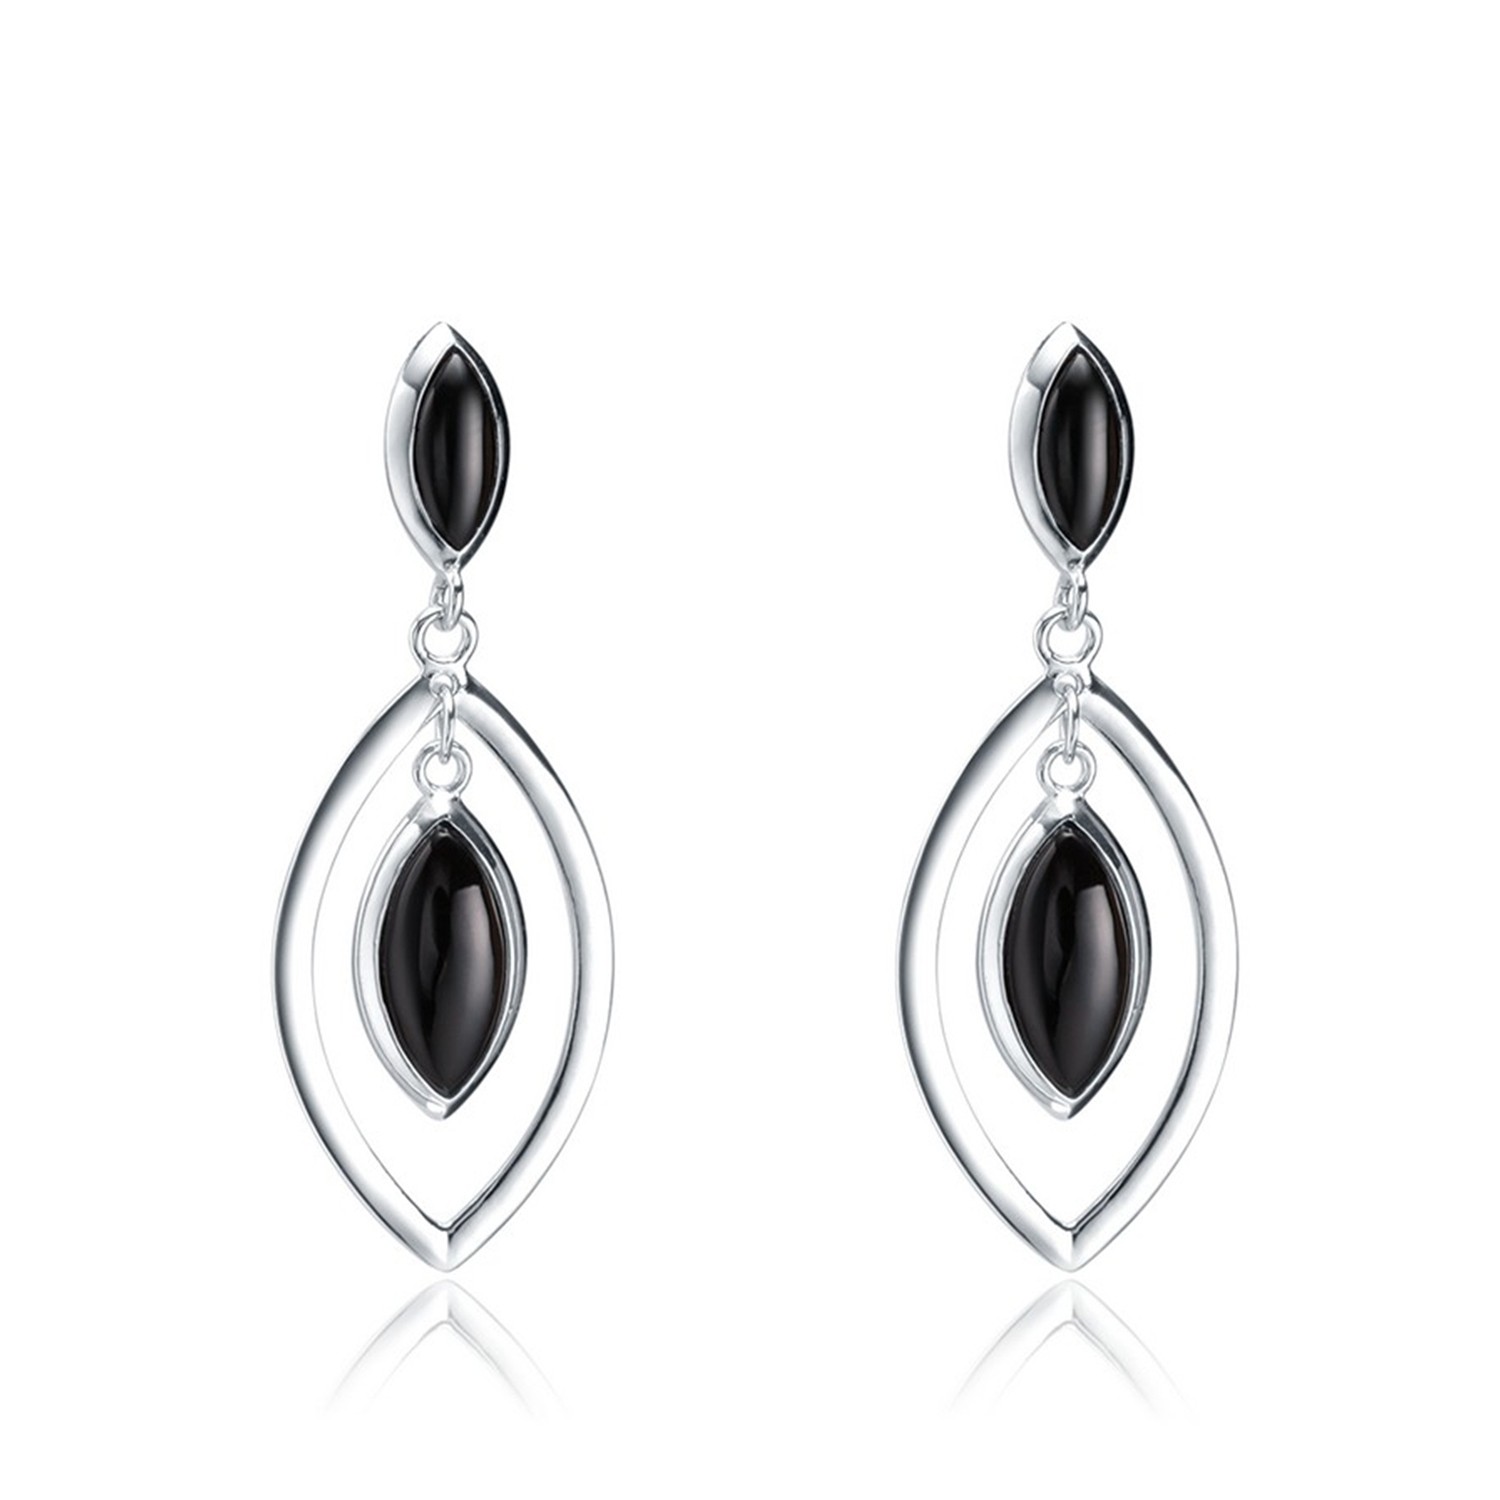 Factory Direct Sale Fashion Black Cubic Zirconia 925 Sterling Silver women drop earring jewelry